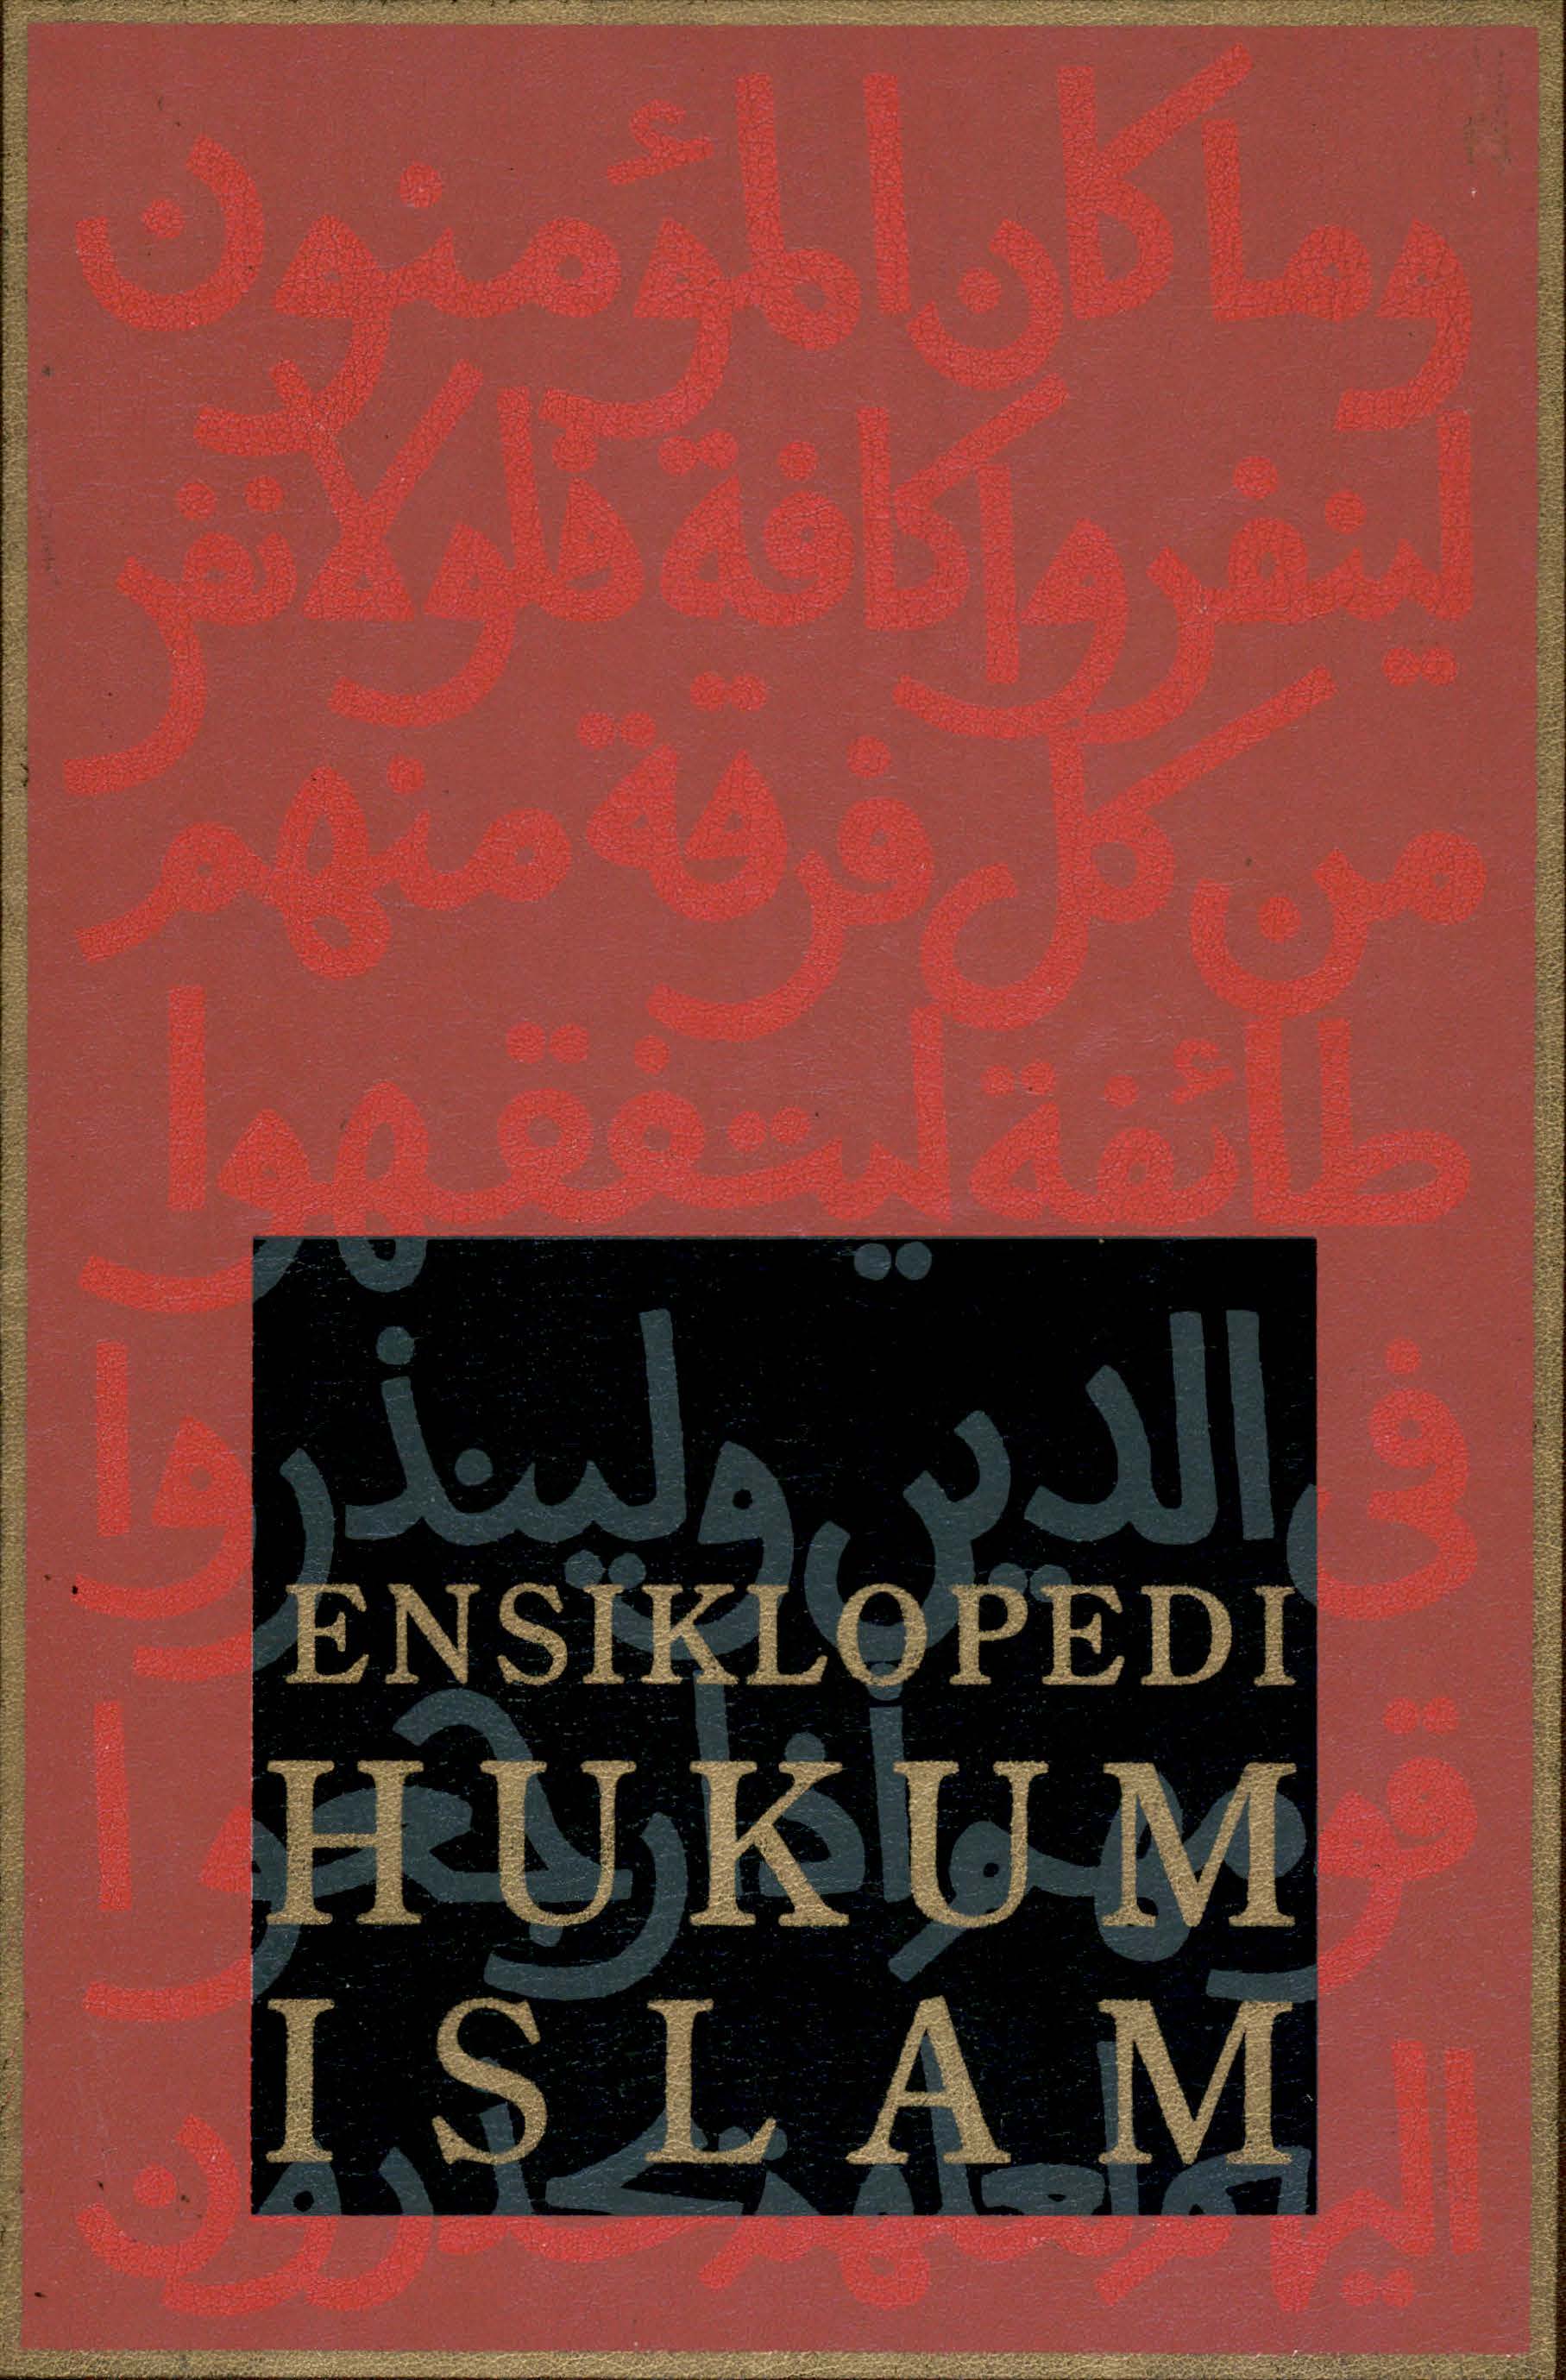 Ensiklopedi hukum islam : vol. 4 mak - put